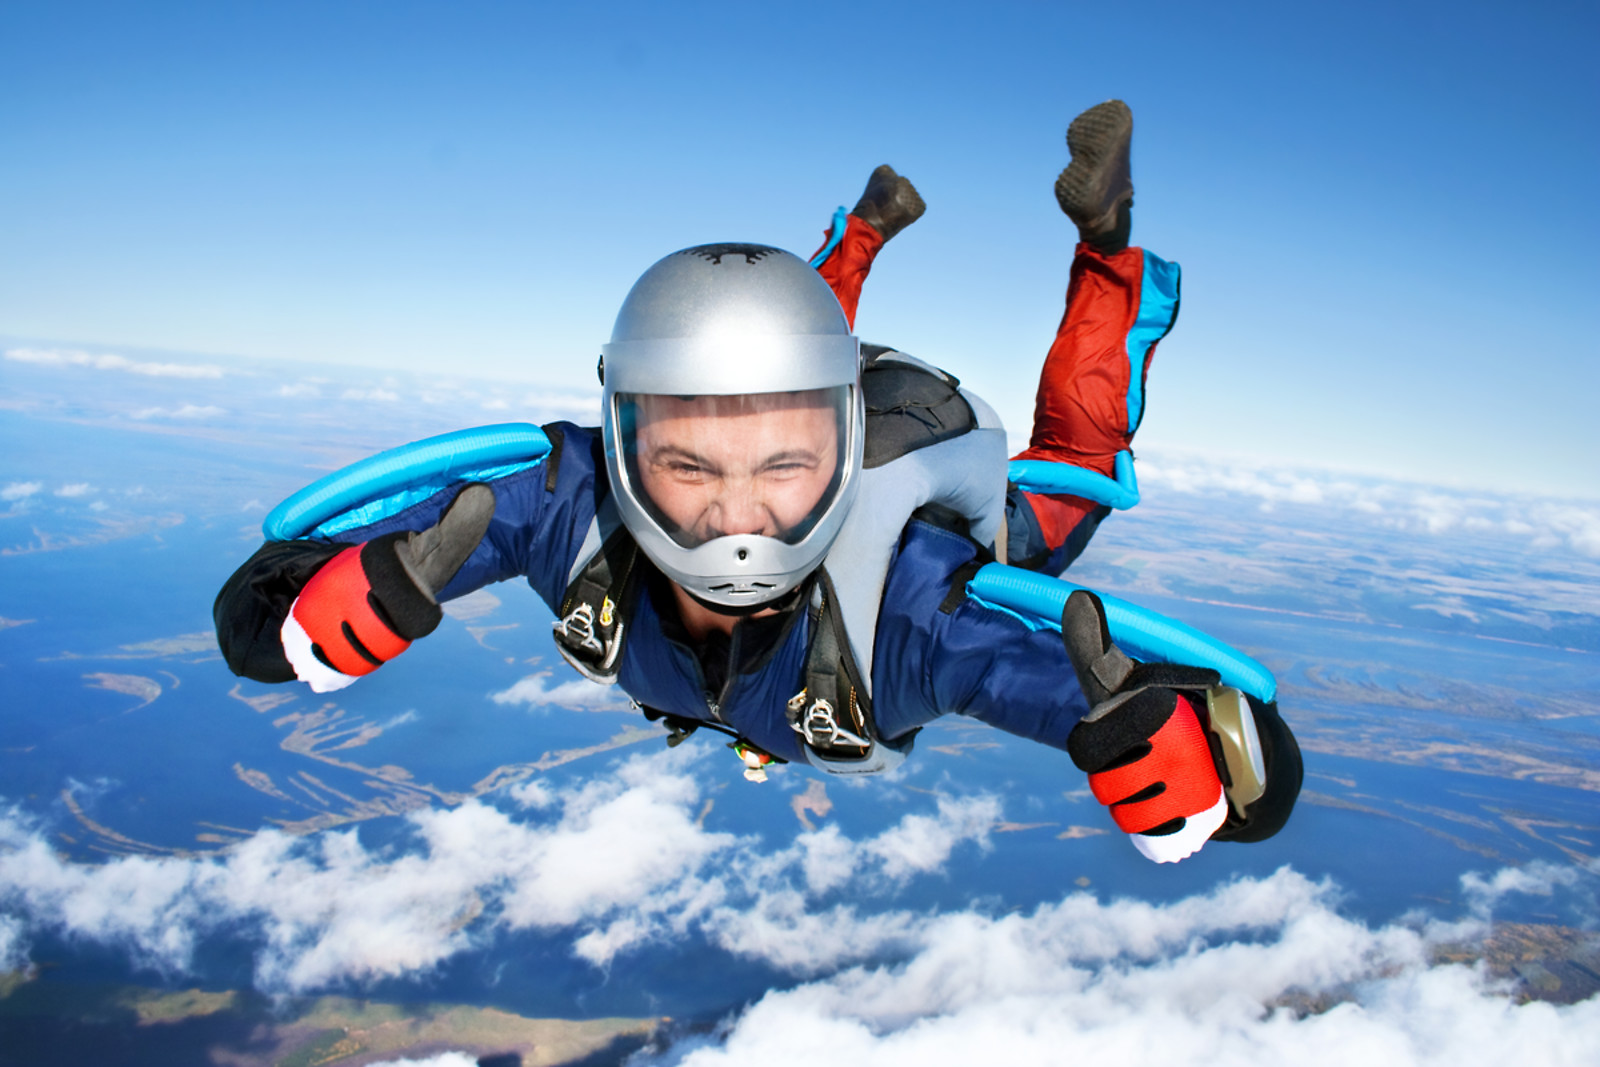 activités sports extrêmes saut en parachute cap adrénaline